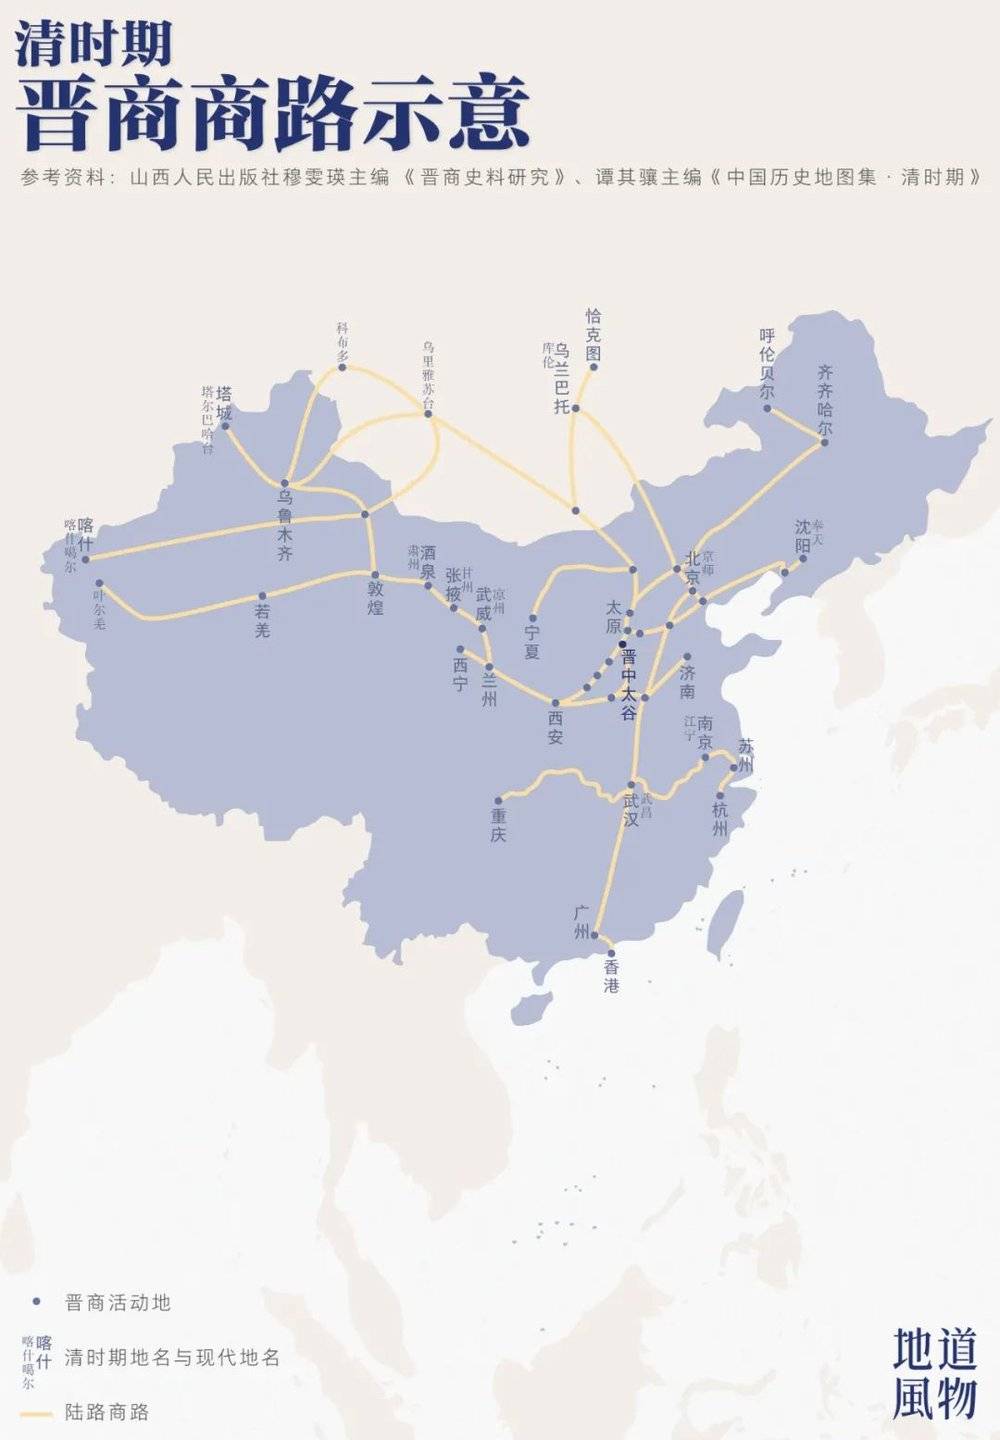 清朝晋商商路示意，晋中太谷是晋商商路的中心点。 制图/F50BB